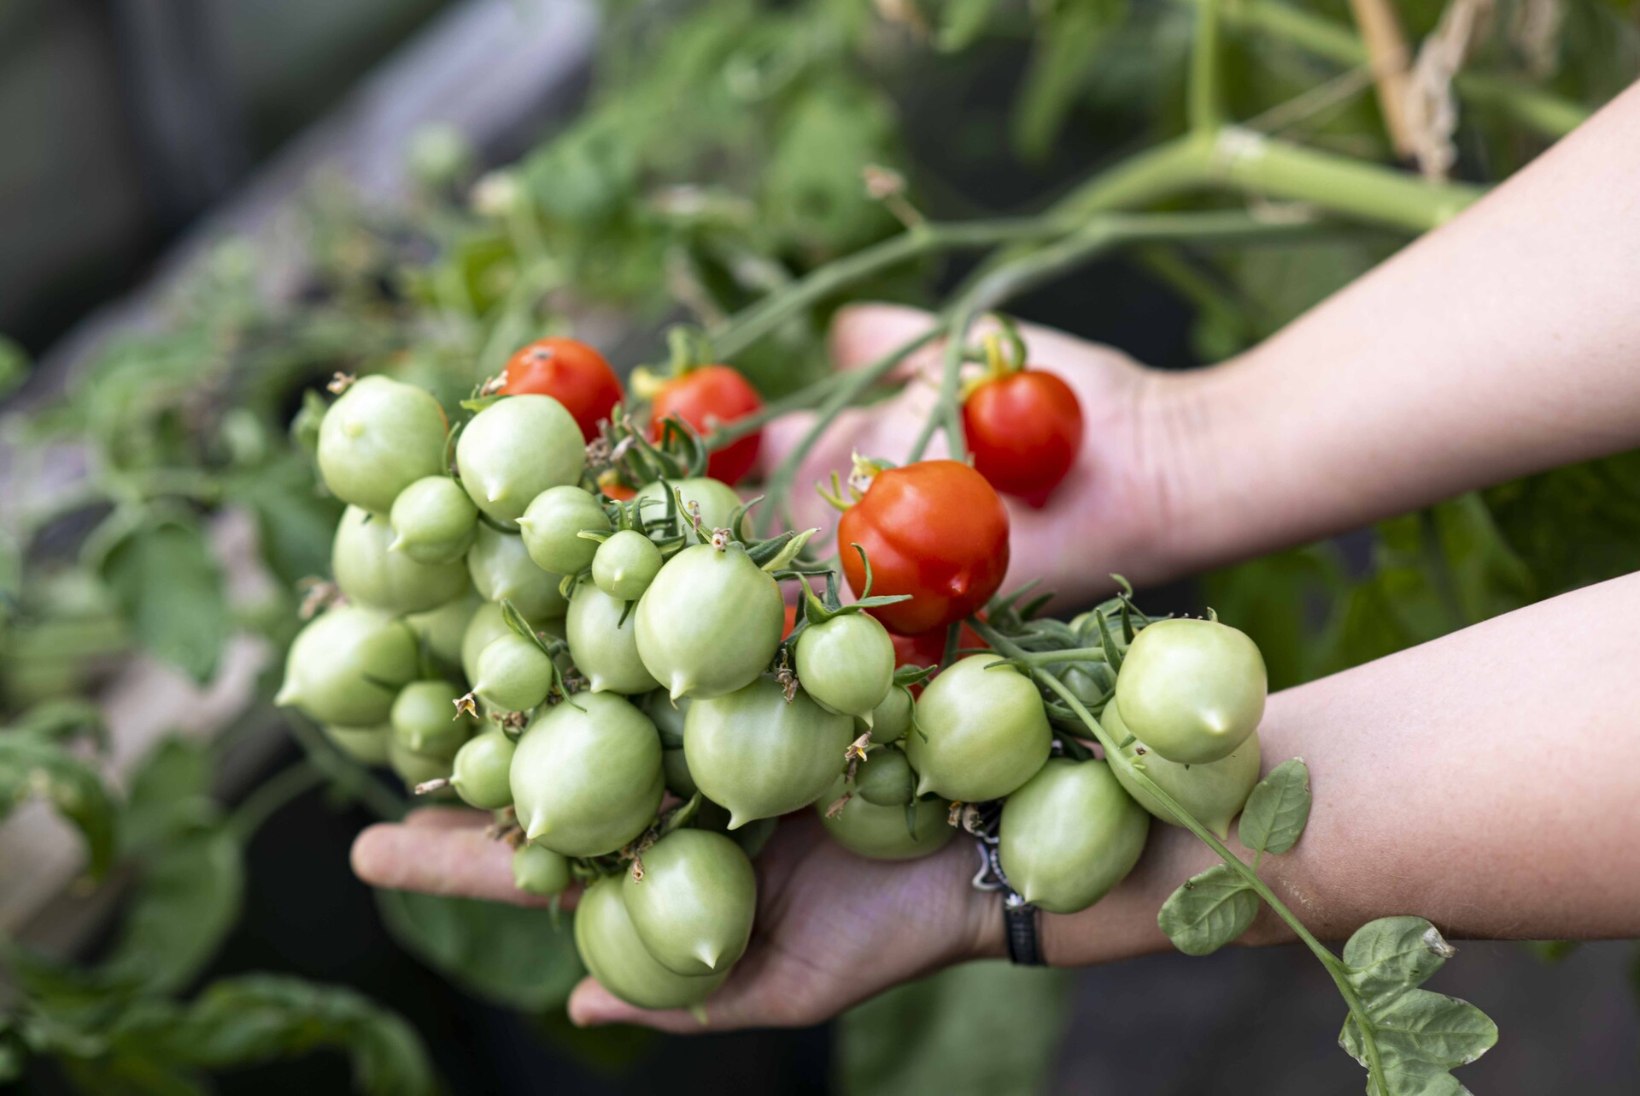 NÄITUS: Tallinna botaanikaaias esitletakse nädalavahetusel üle 200 sordi tomateid